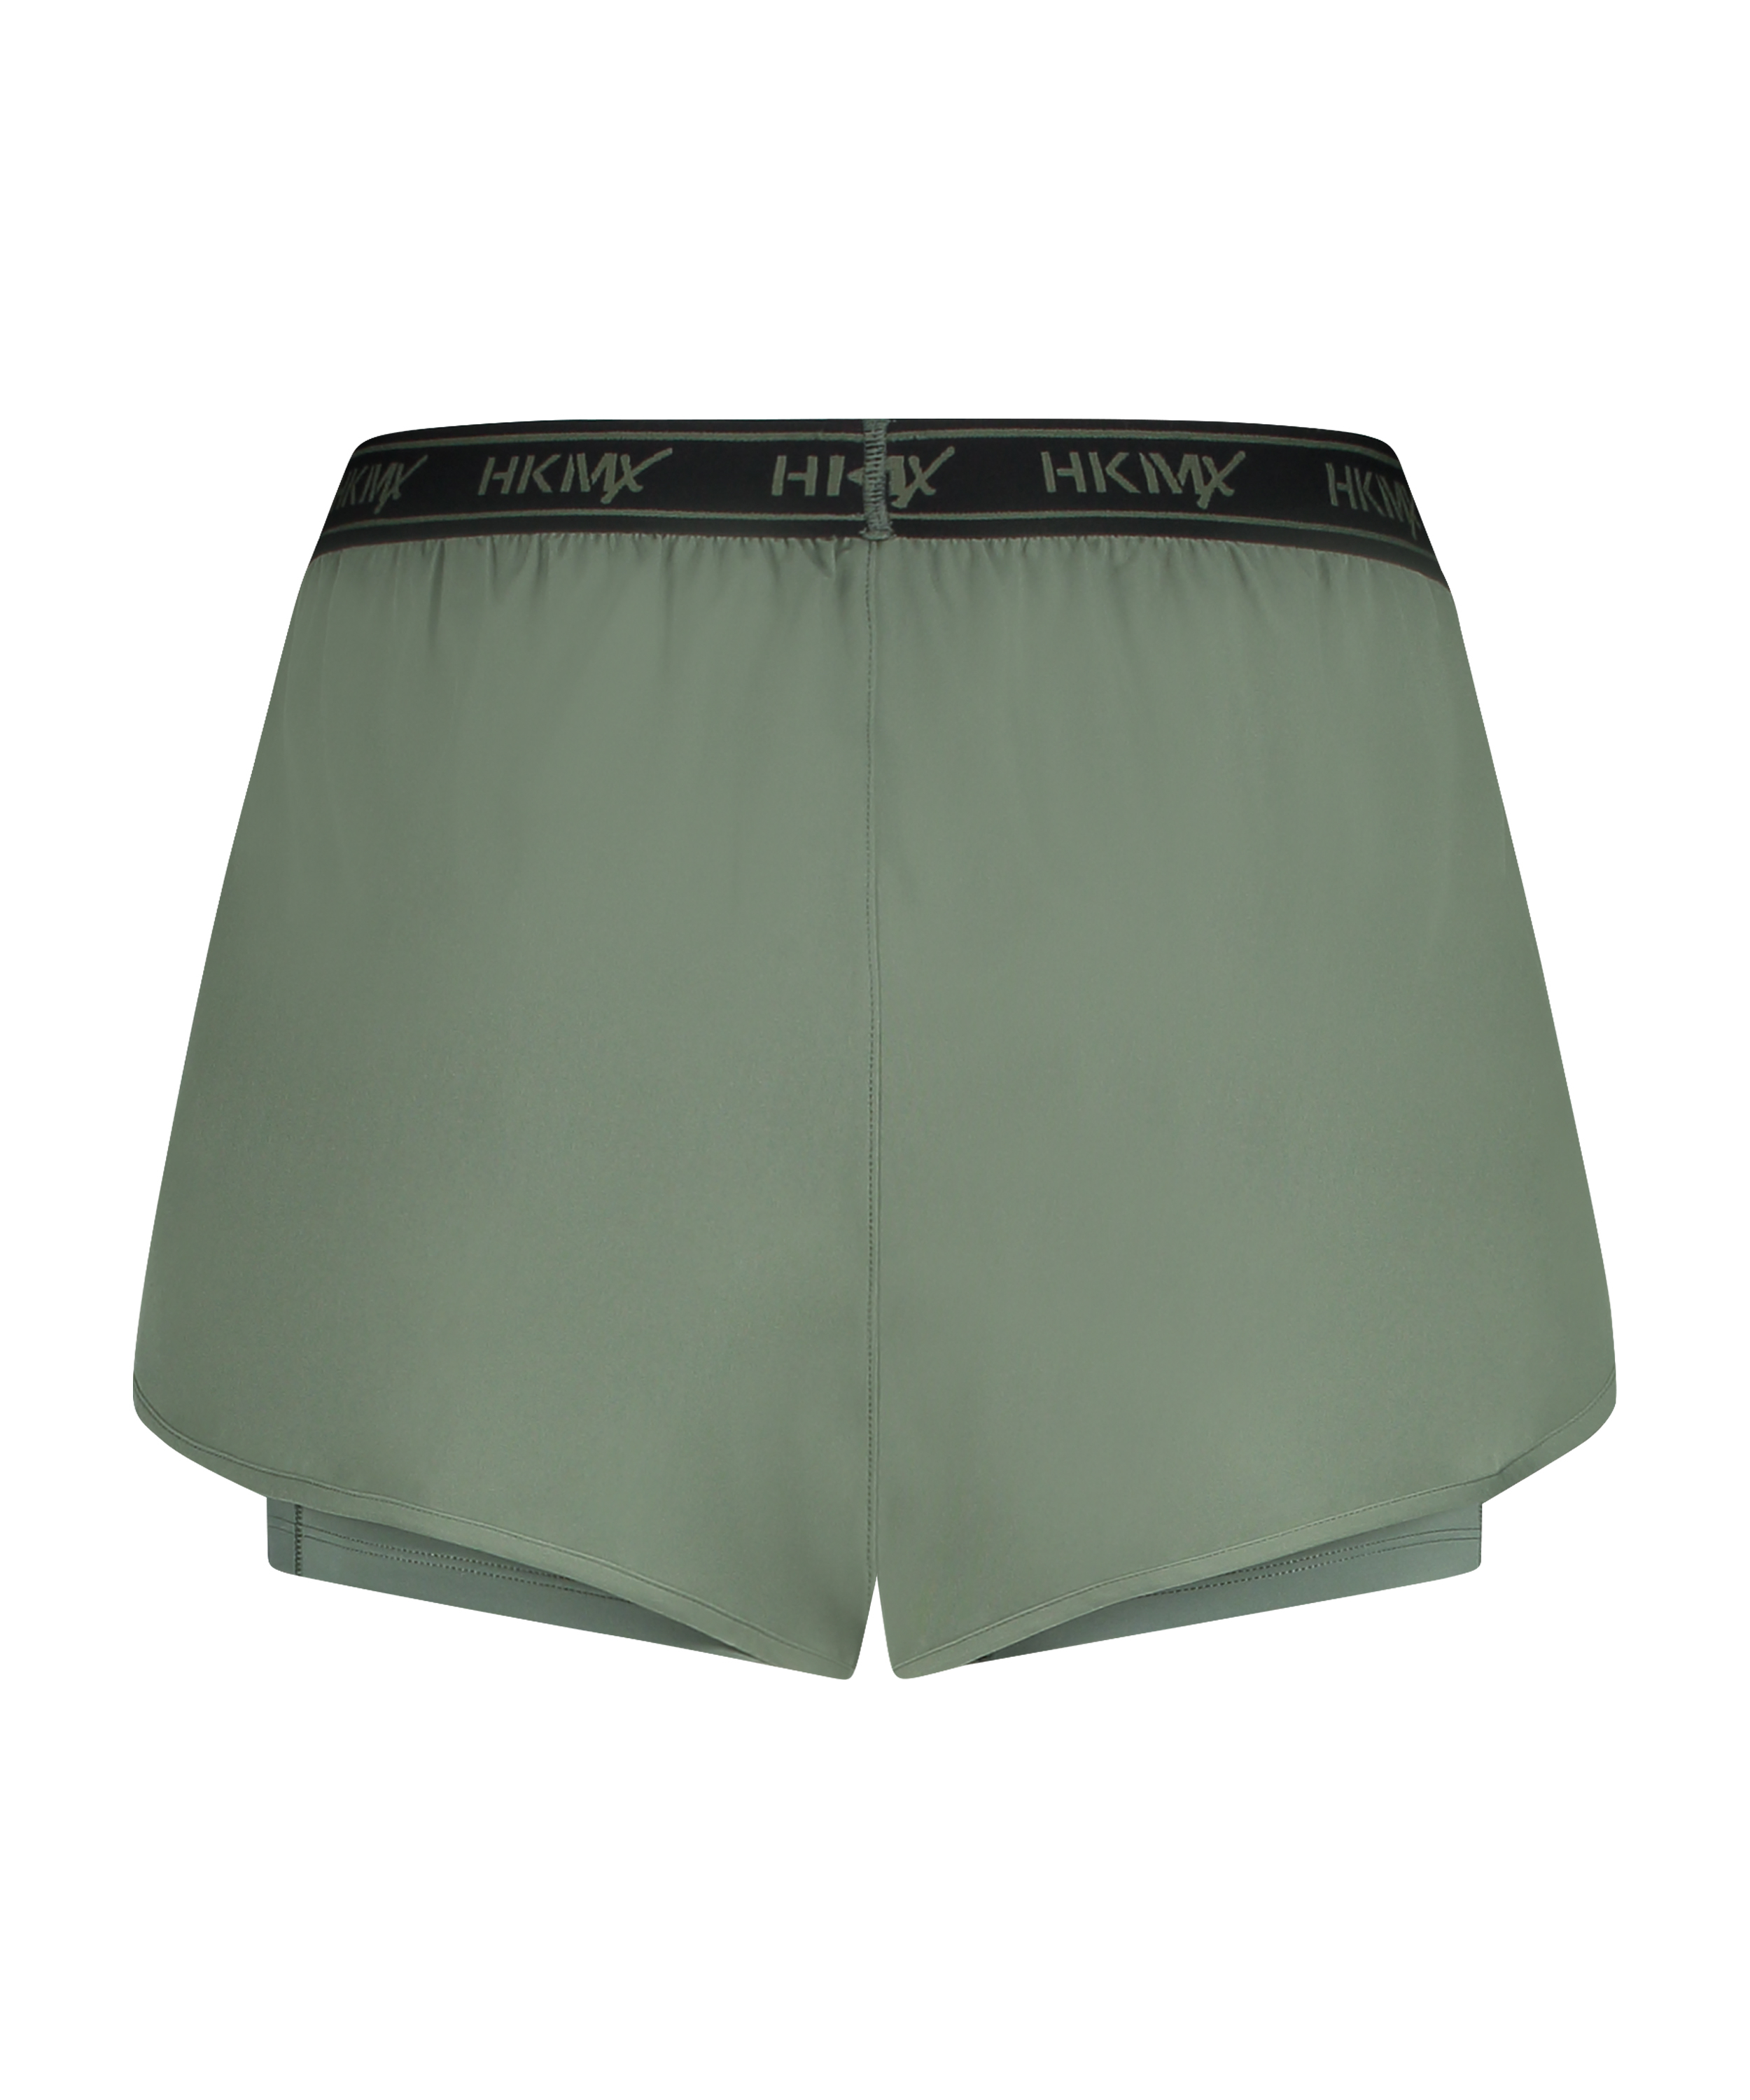 HKMX Sport-Shorts, grün, main